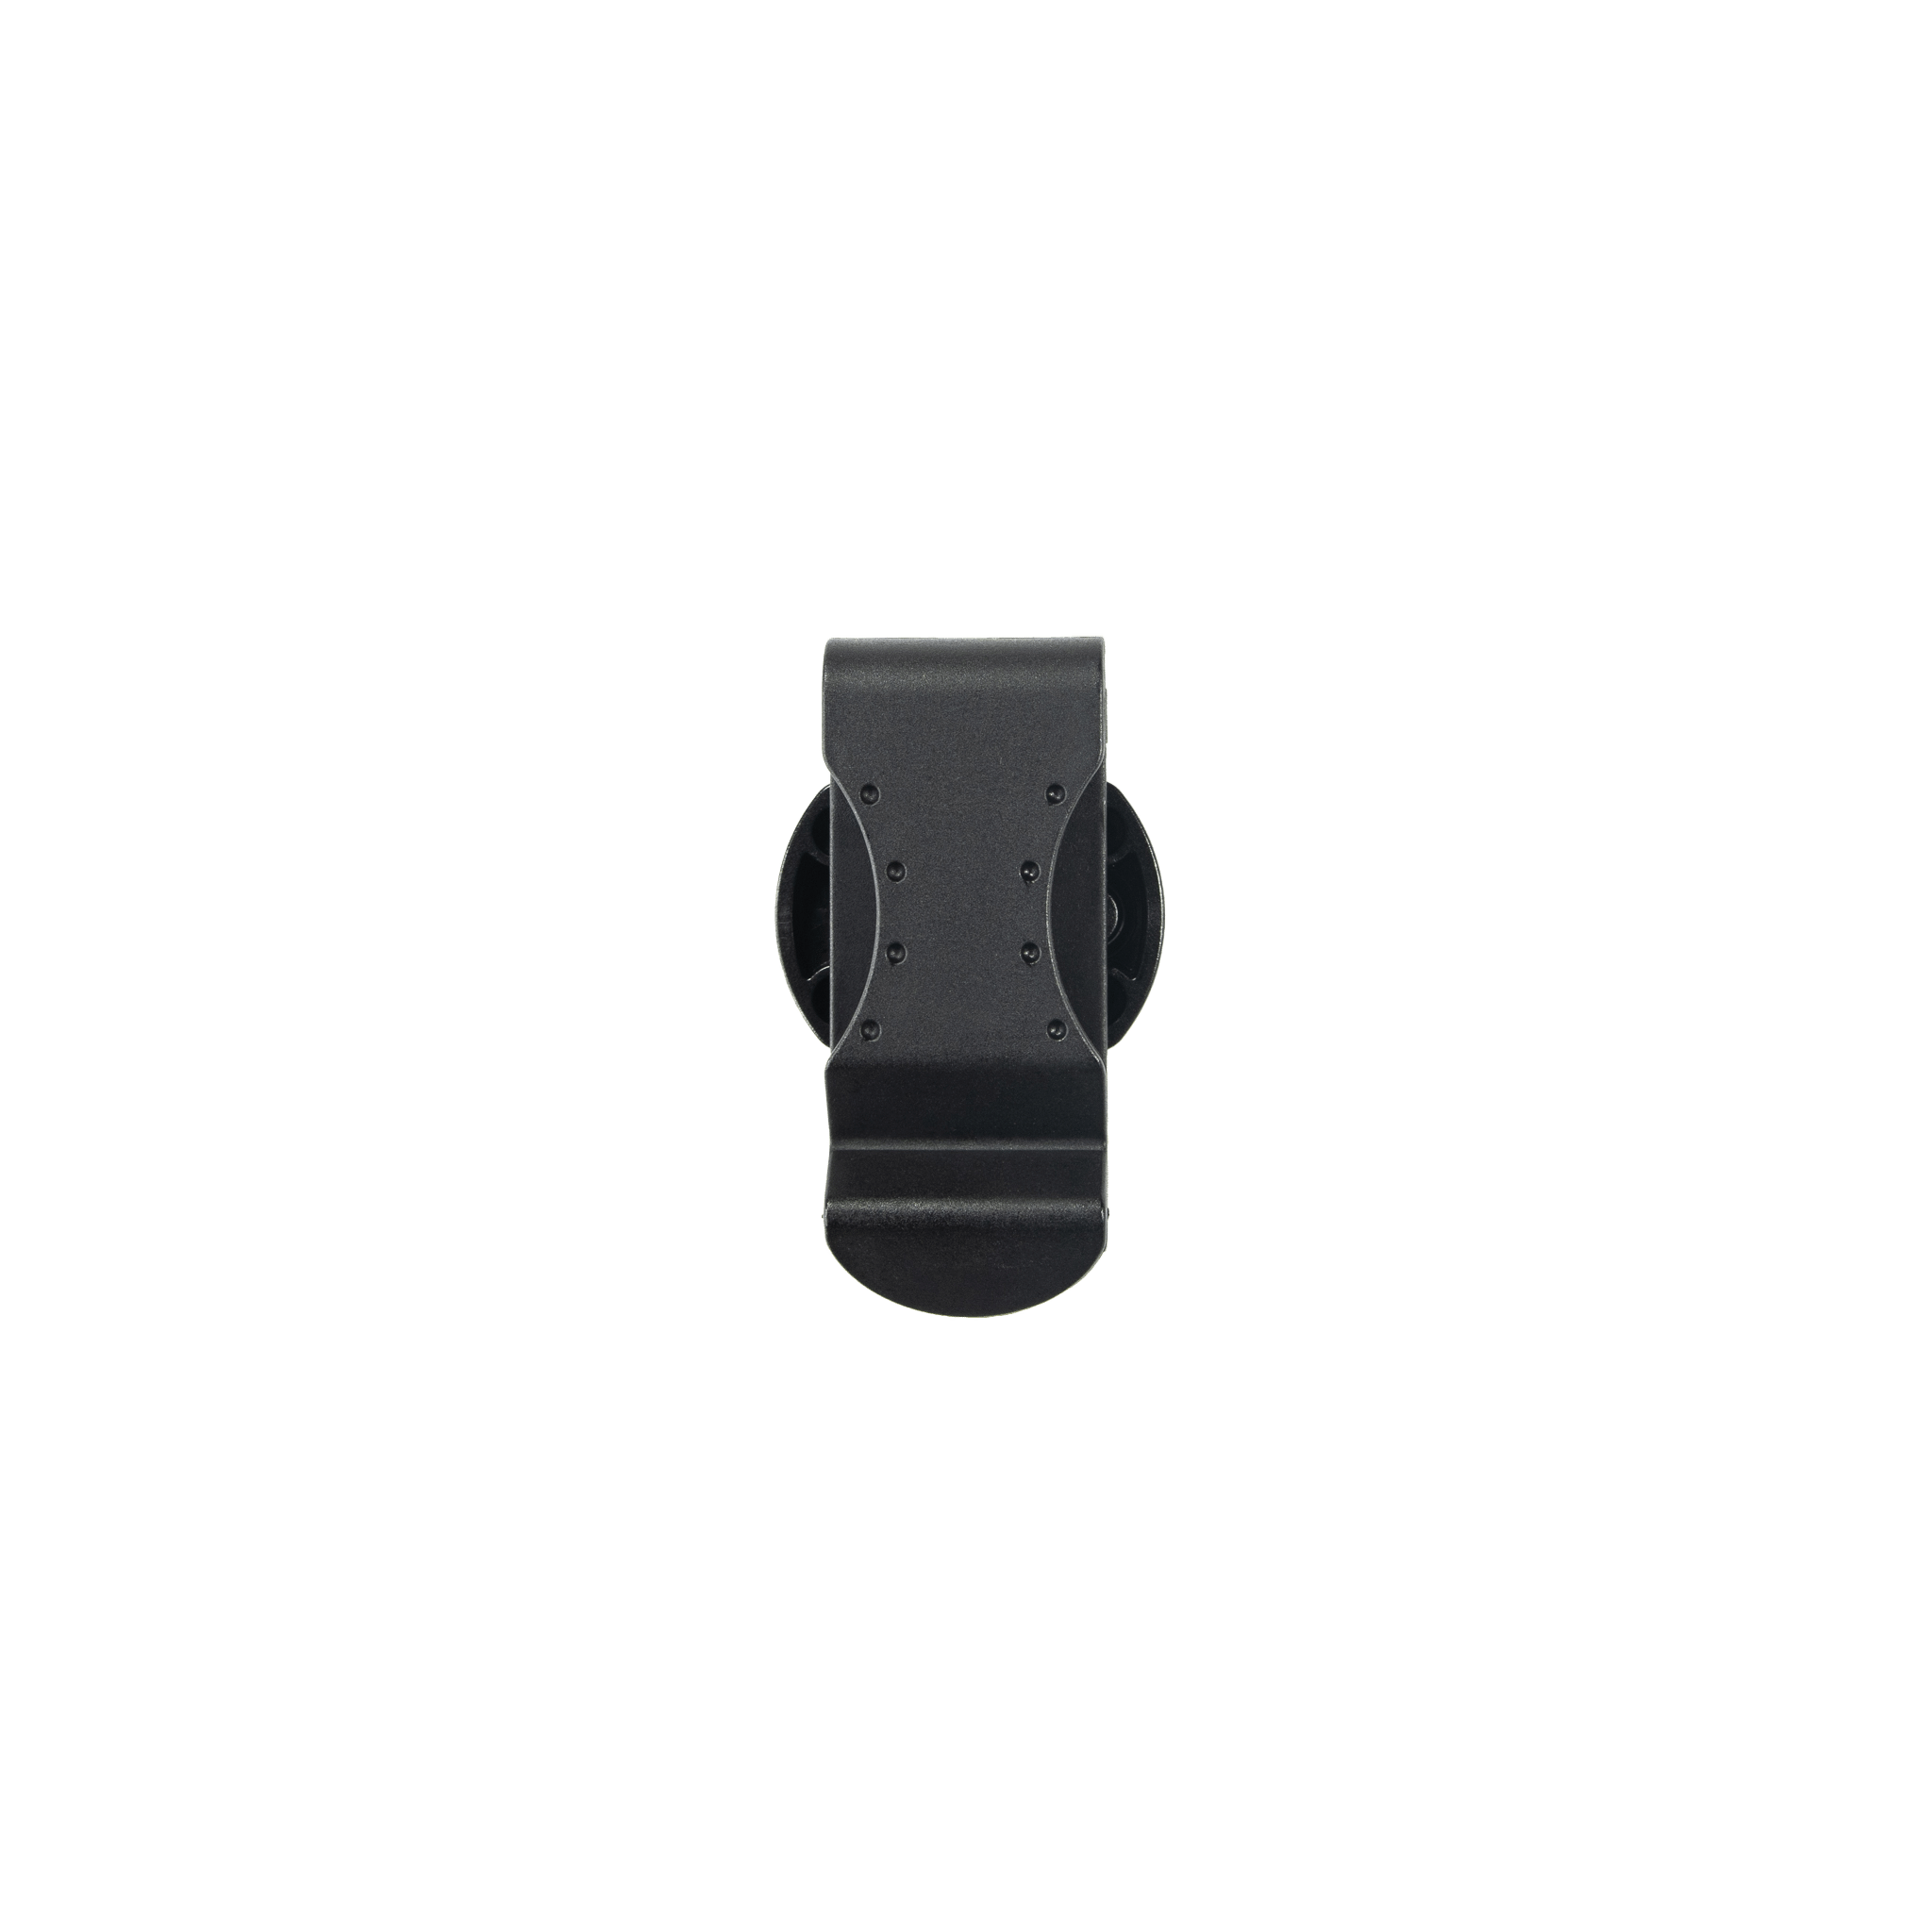 Belt Clip Type A | Practical Lamp Clip | Wide Ledlenser Compatibility